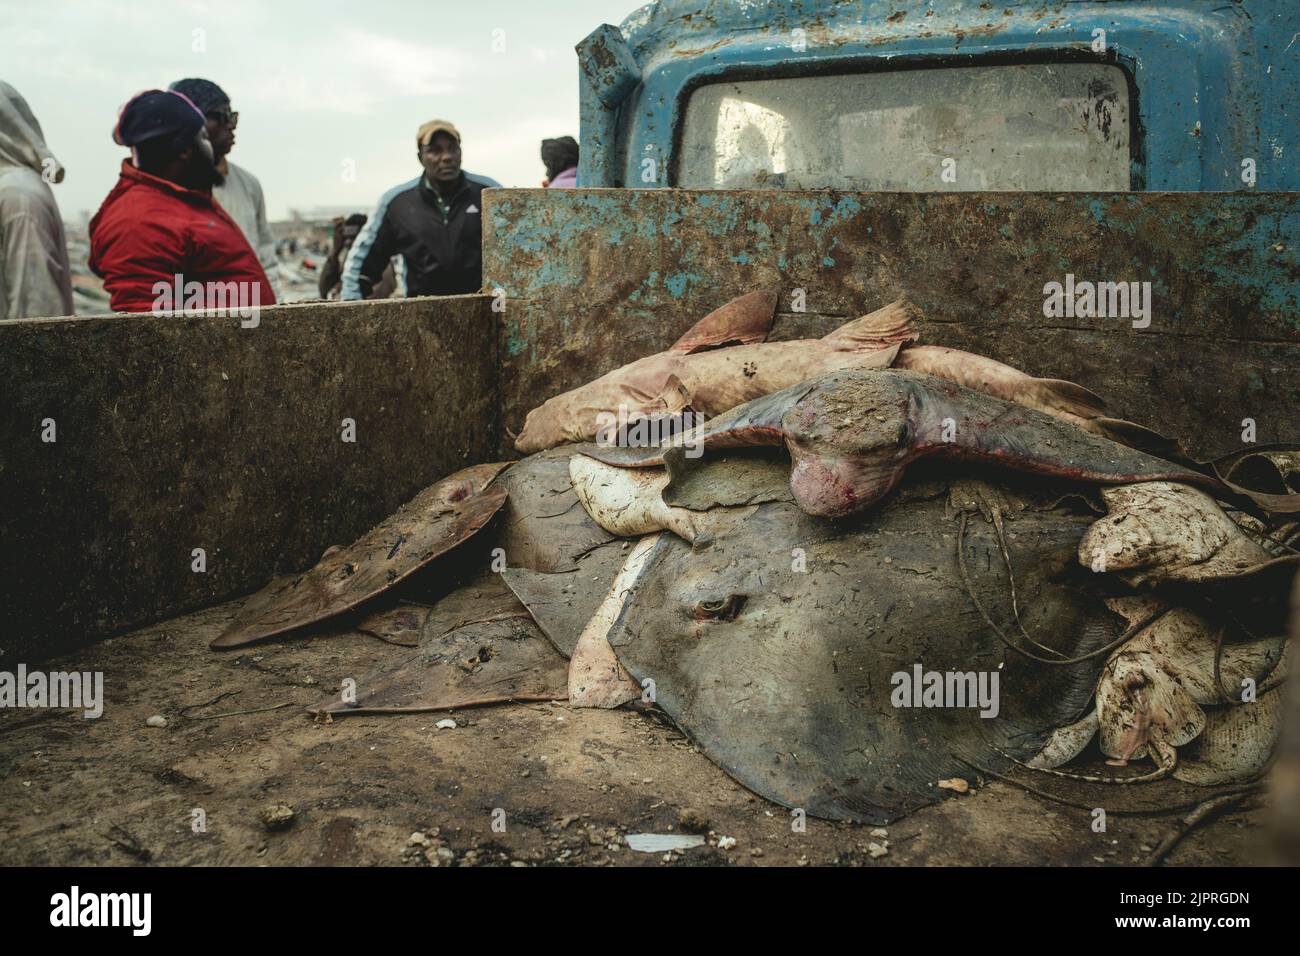 Requins et raies à l'arrière d'un camion, Port de Peche Traditionelle, Nouadhibou, Mauritanie Banque D'Images